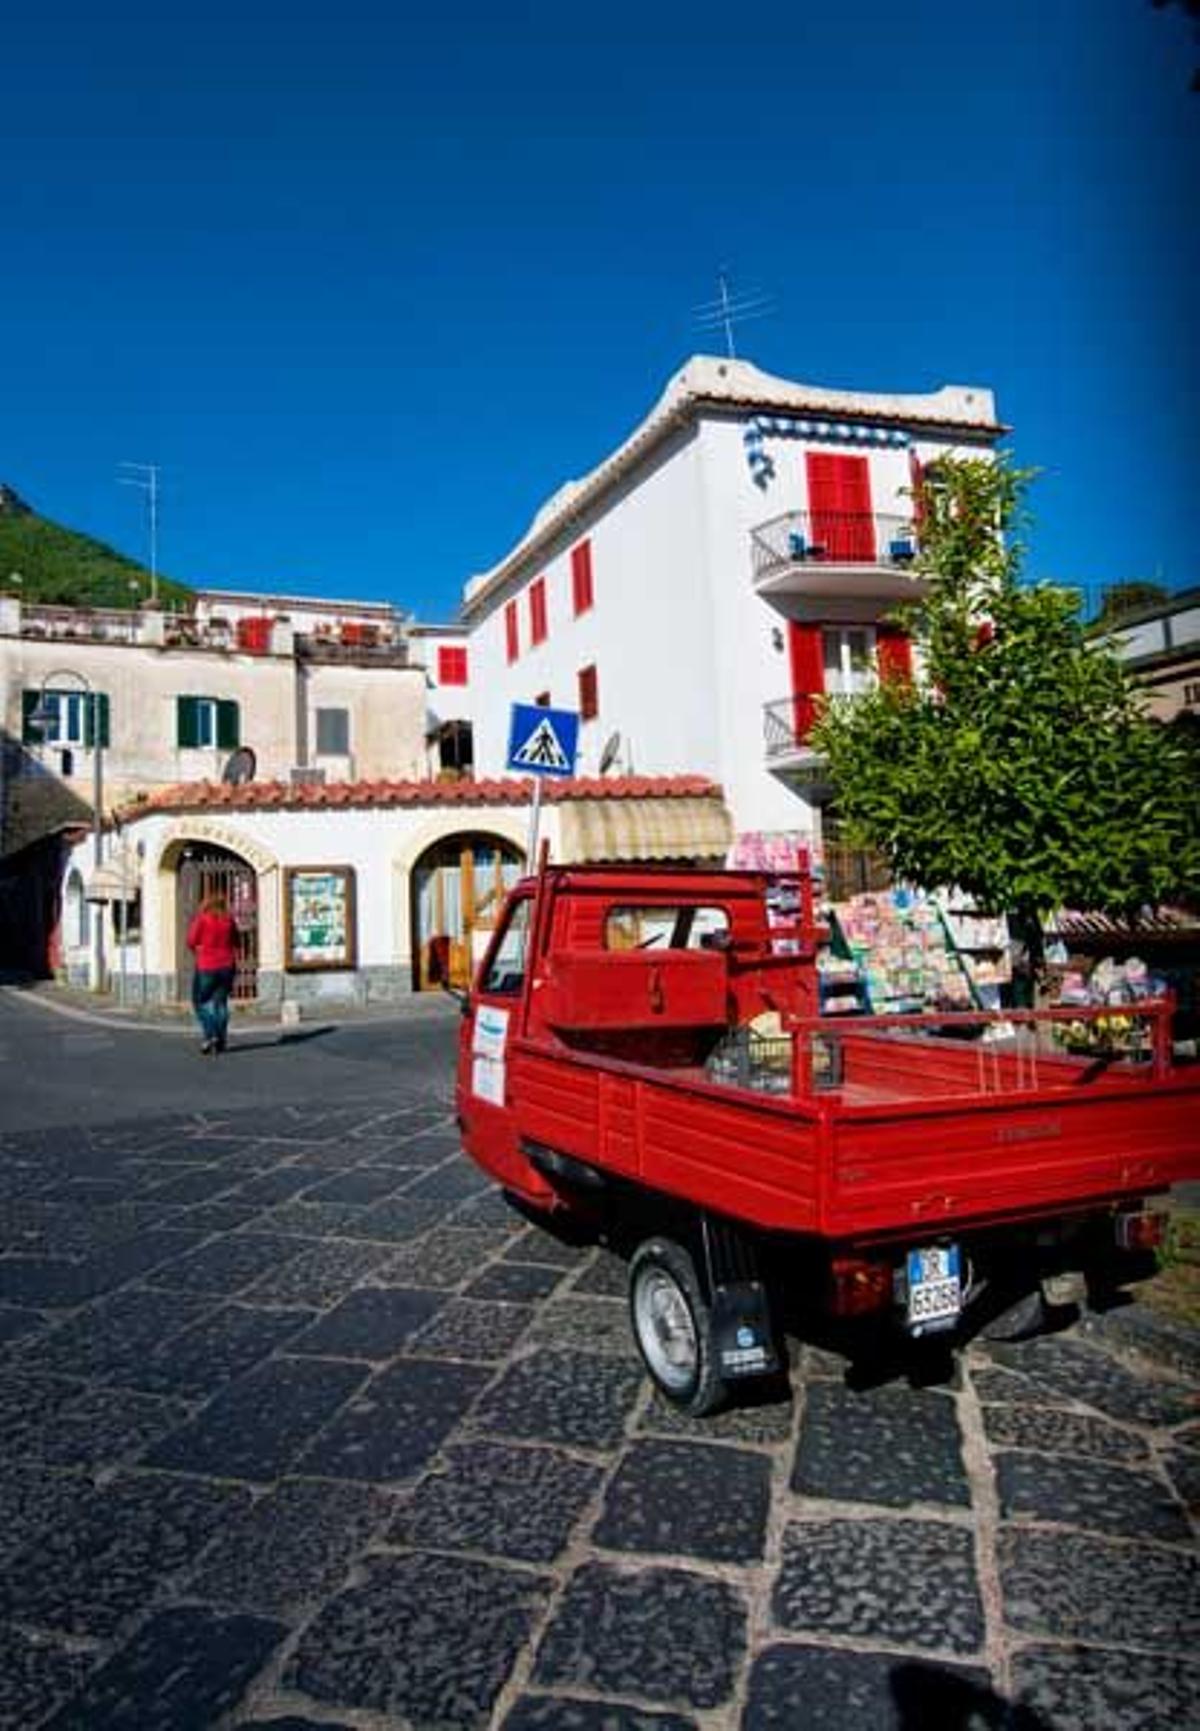 La isla de Ischia tiene en sus centros termales y sus playas solitarias dos de sus principales atractivos.